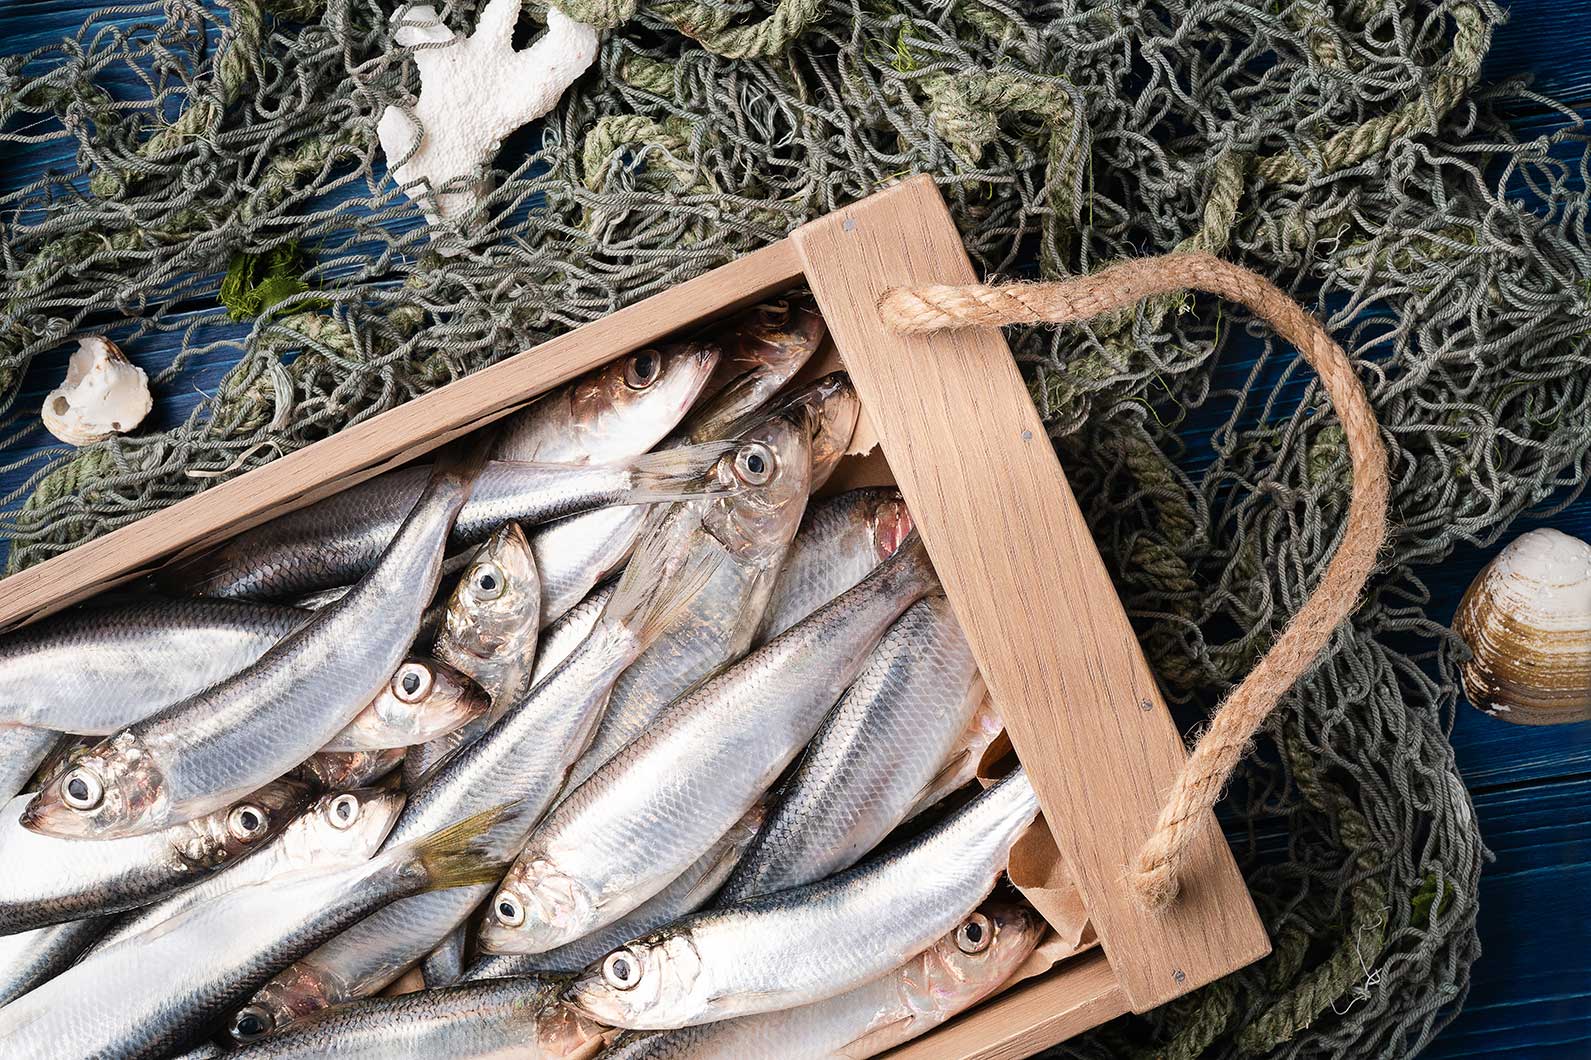 Салака: польза, вред и калорийность рыбы | food and health